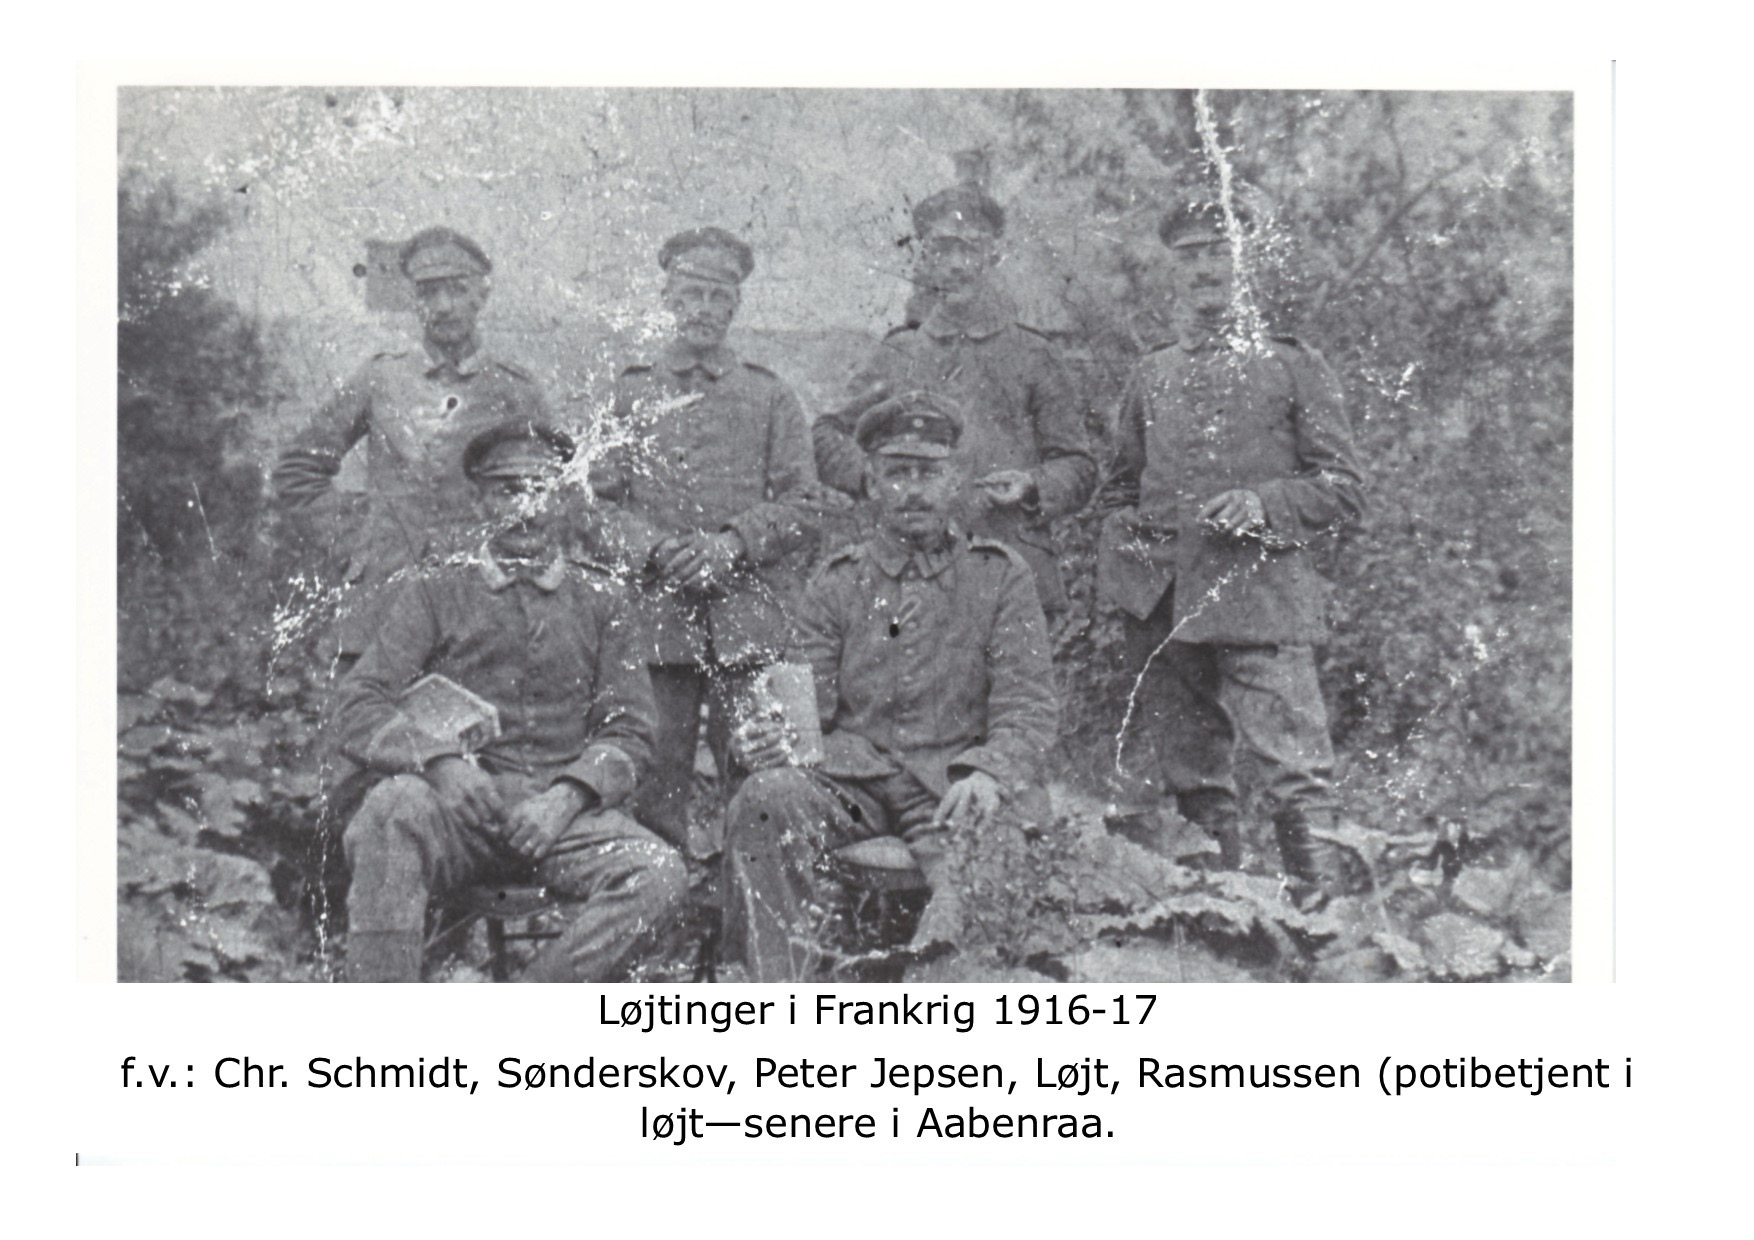 Løjtinger som soldater i Frankrig 1916-17 